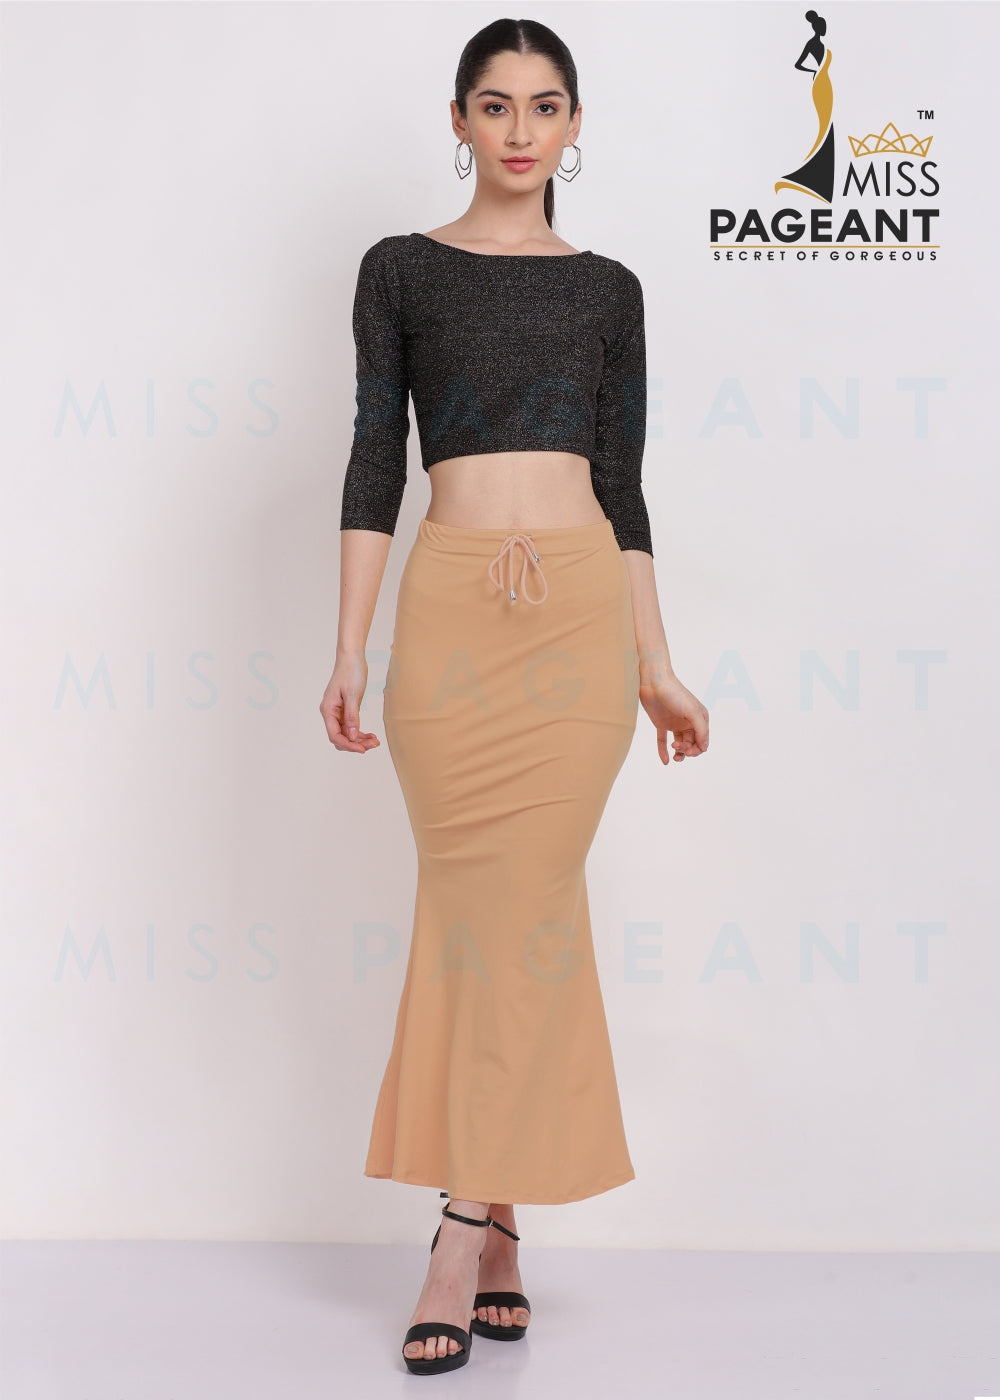 Cotton Mermaid Saree Shapewear - (Mini) – Miss Pageant